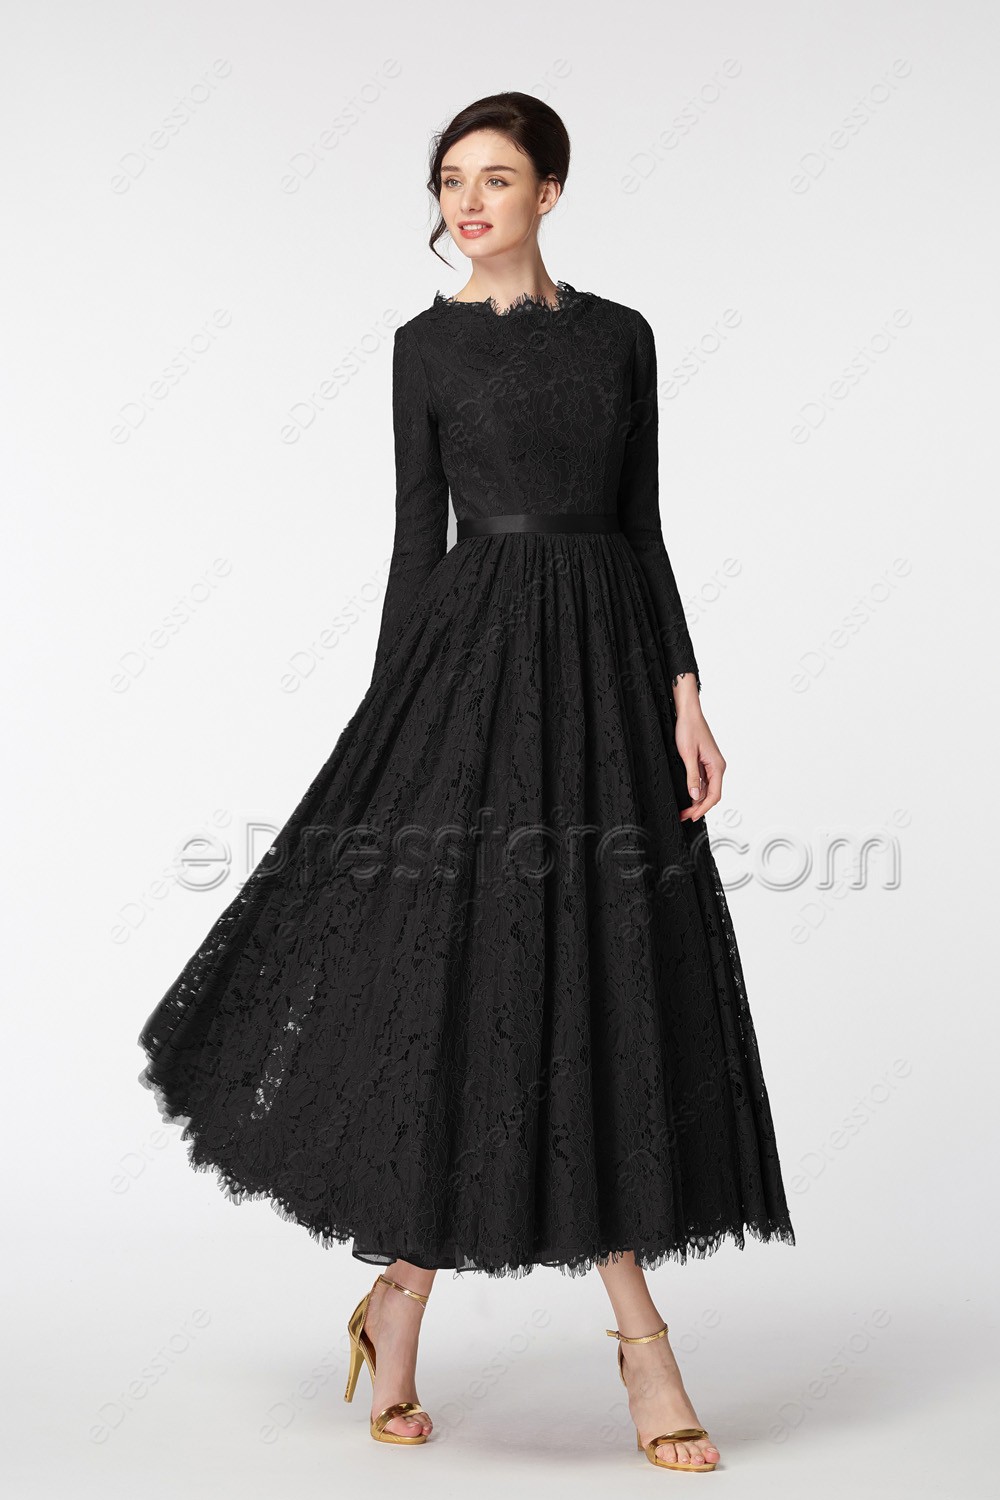 Modest Black Formal Dresses Long ...